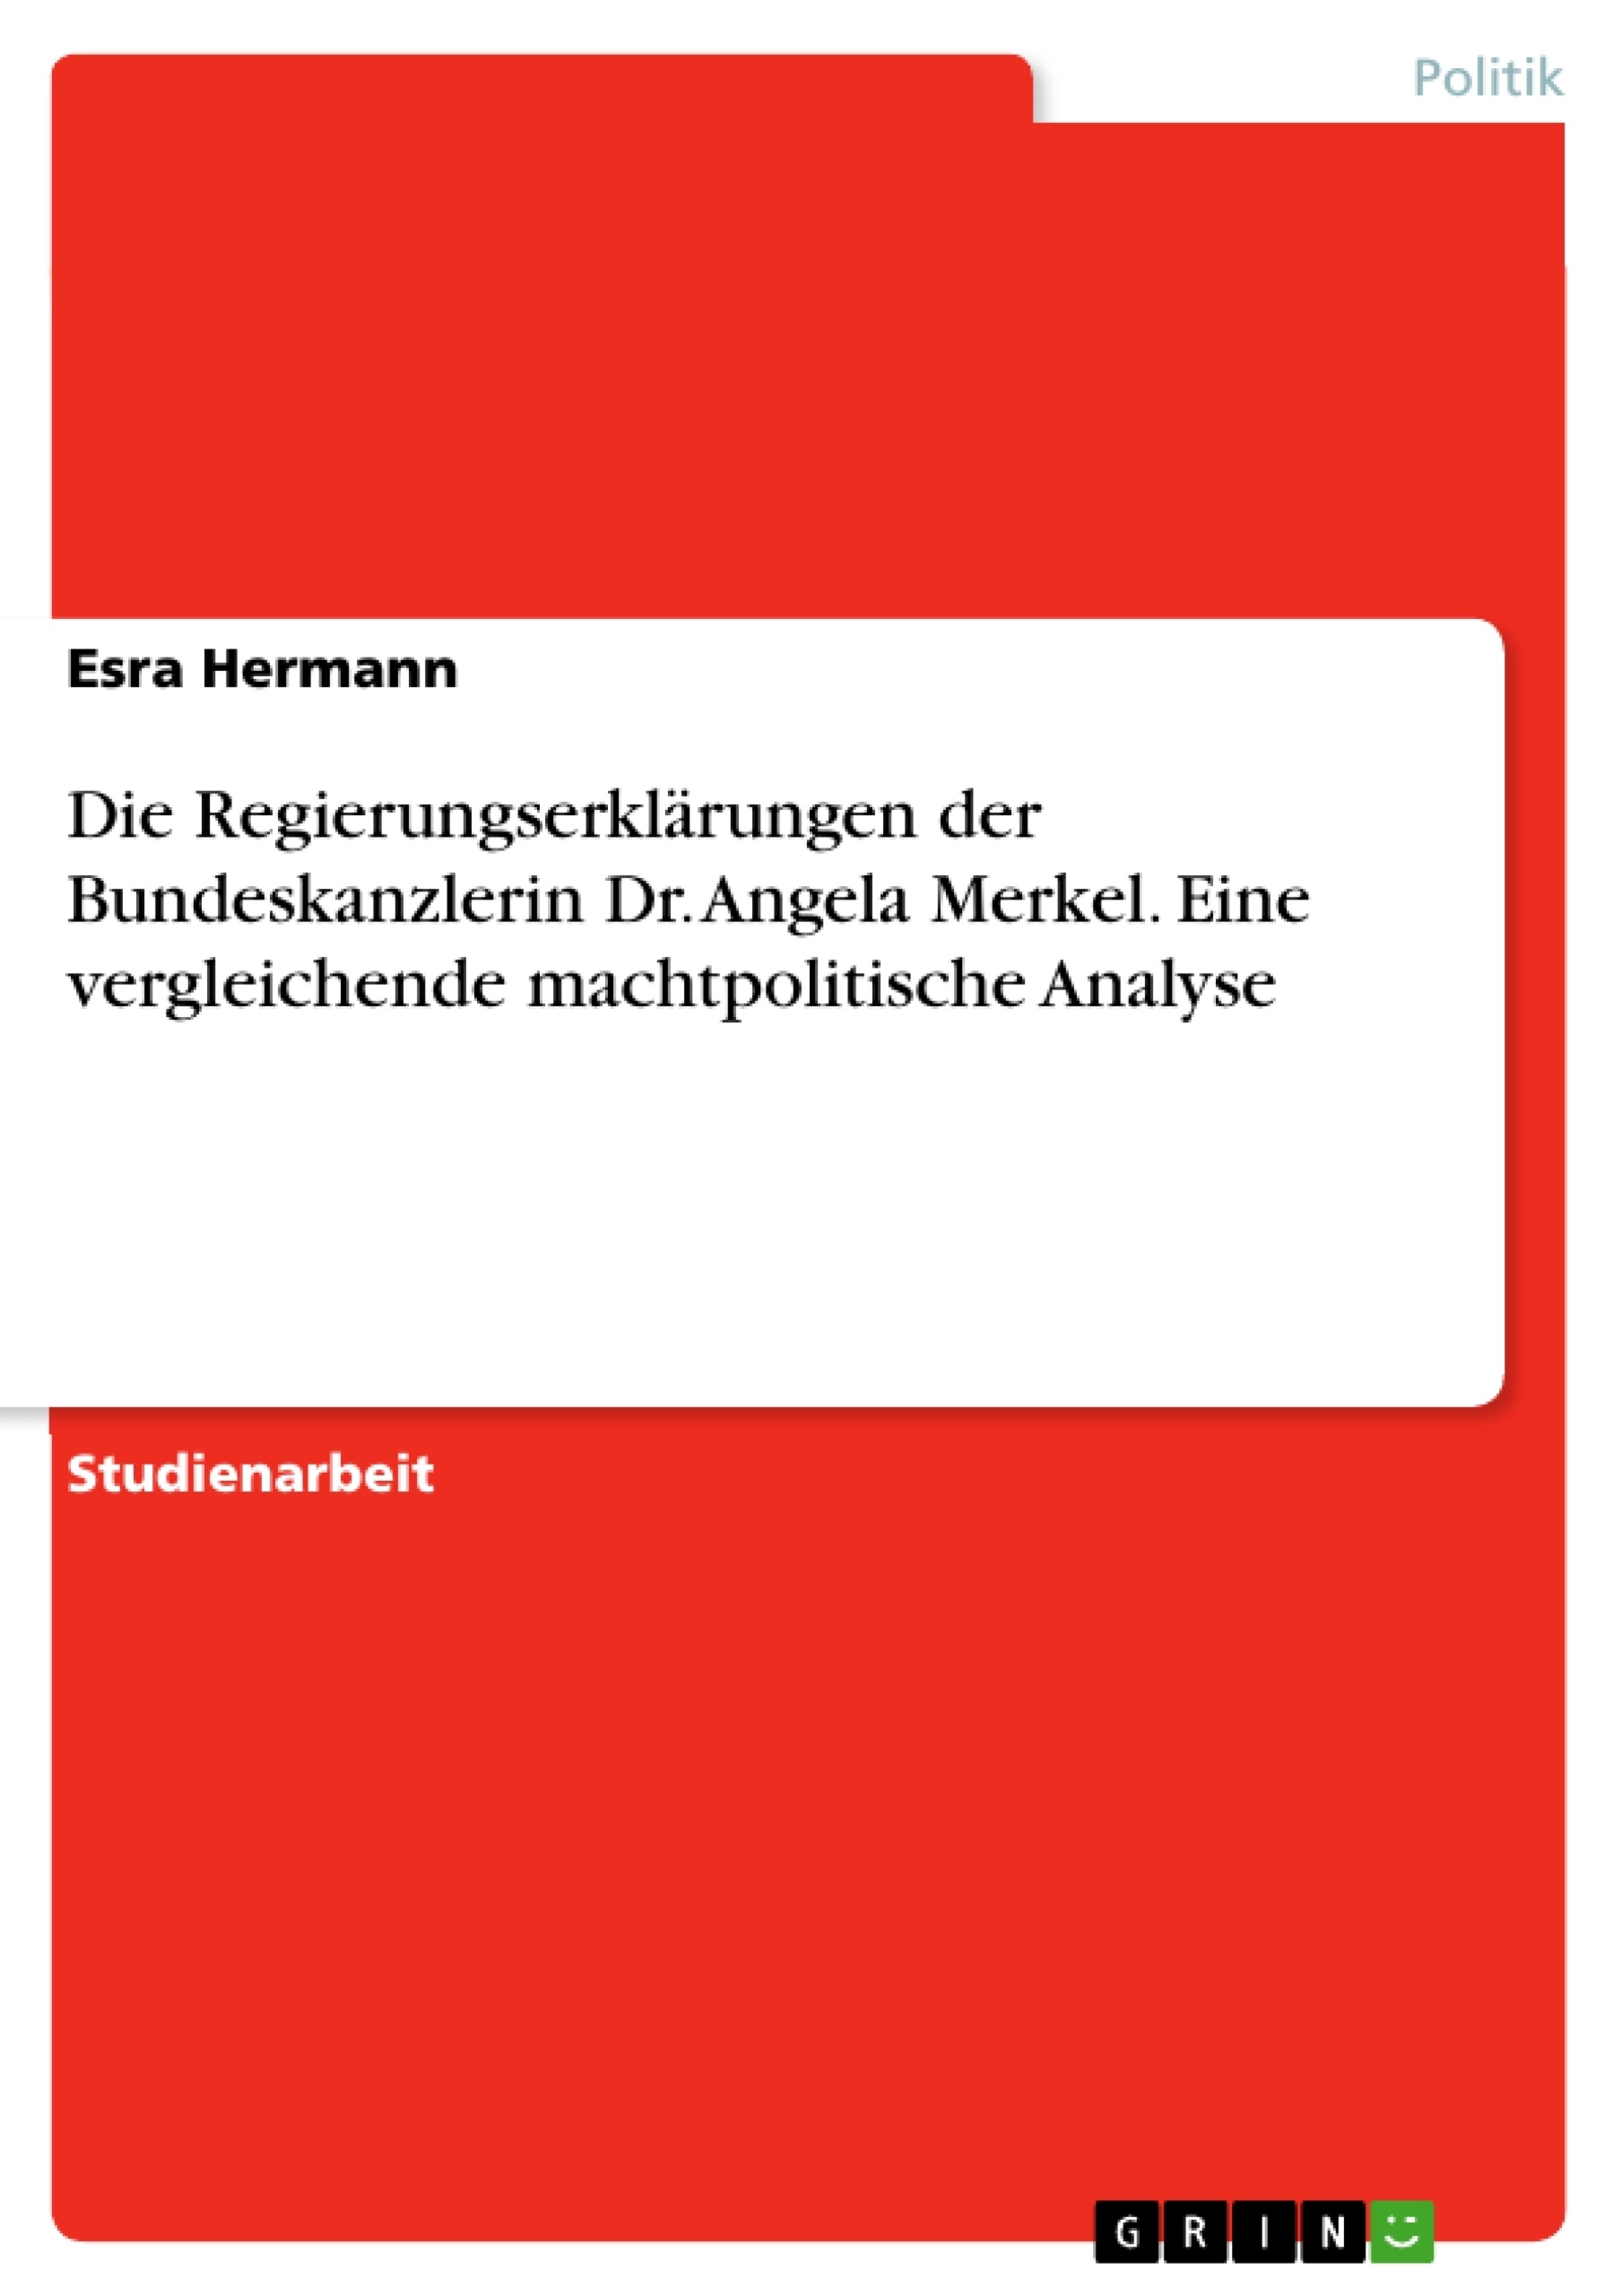 Titre: Die Regierungserklärungen der Bundeskanzlerin Dr. Angela Merkel. Eine vergleichende machtpolitische Analyse